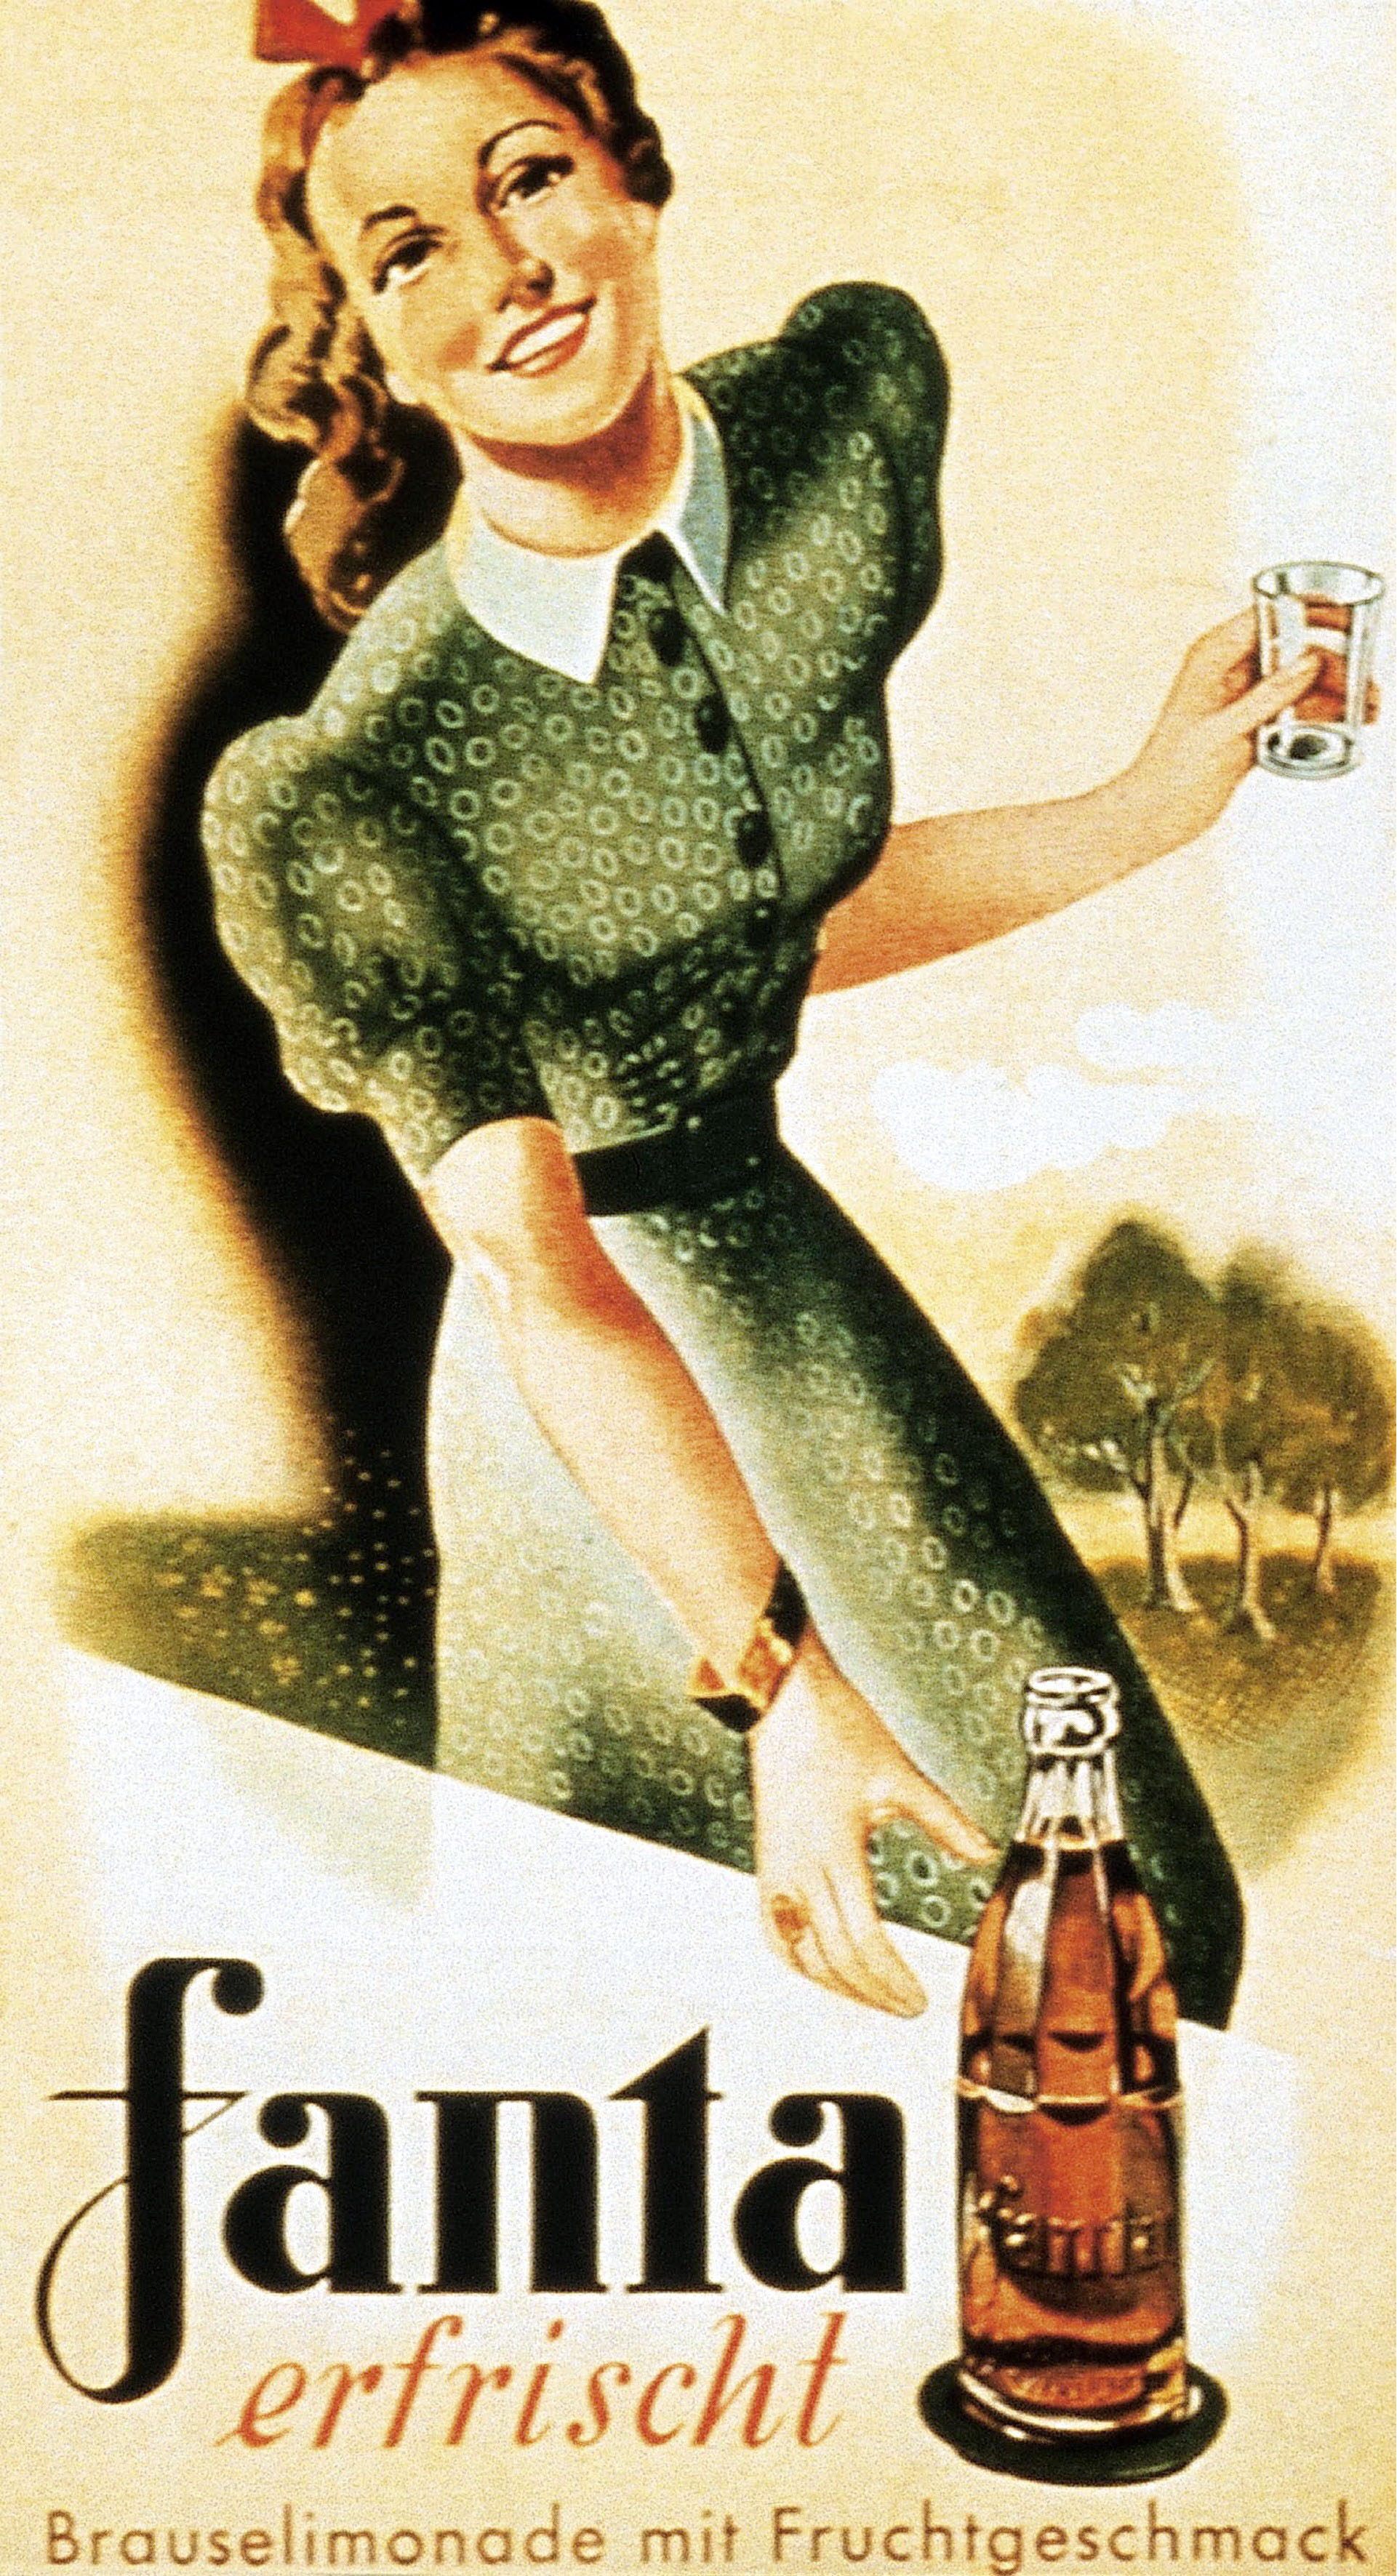 یک تبلیغ فانتا در سال 1950 که آن را با لیموناد تازه مقایسه می کند.